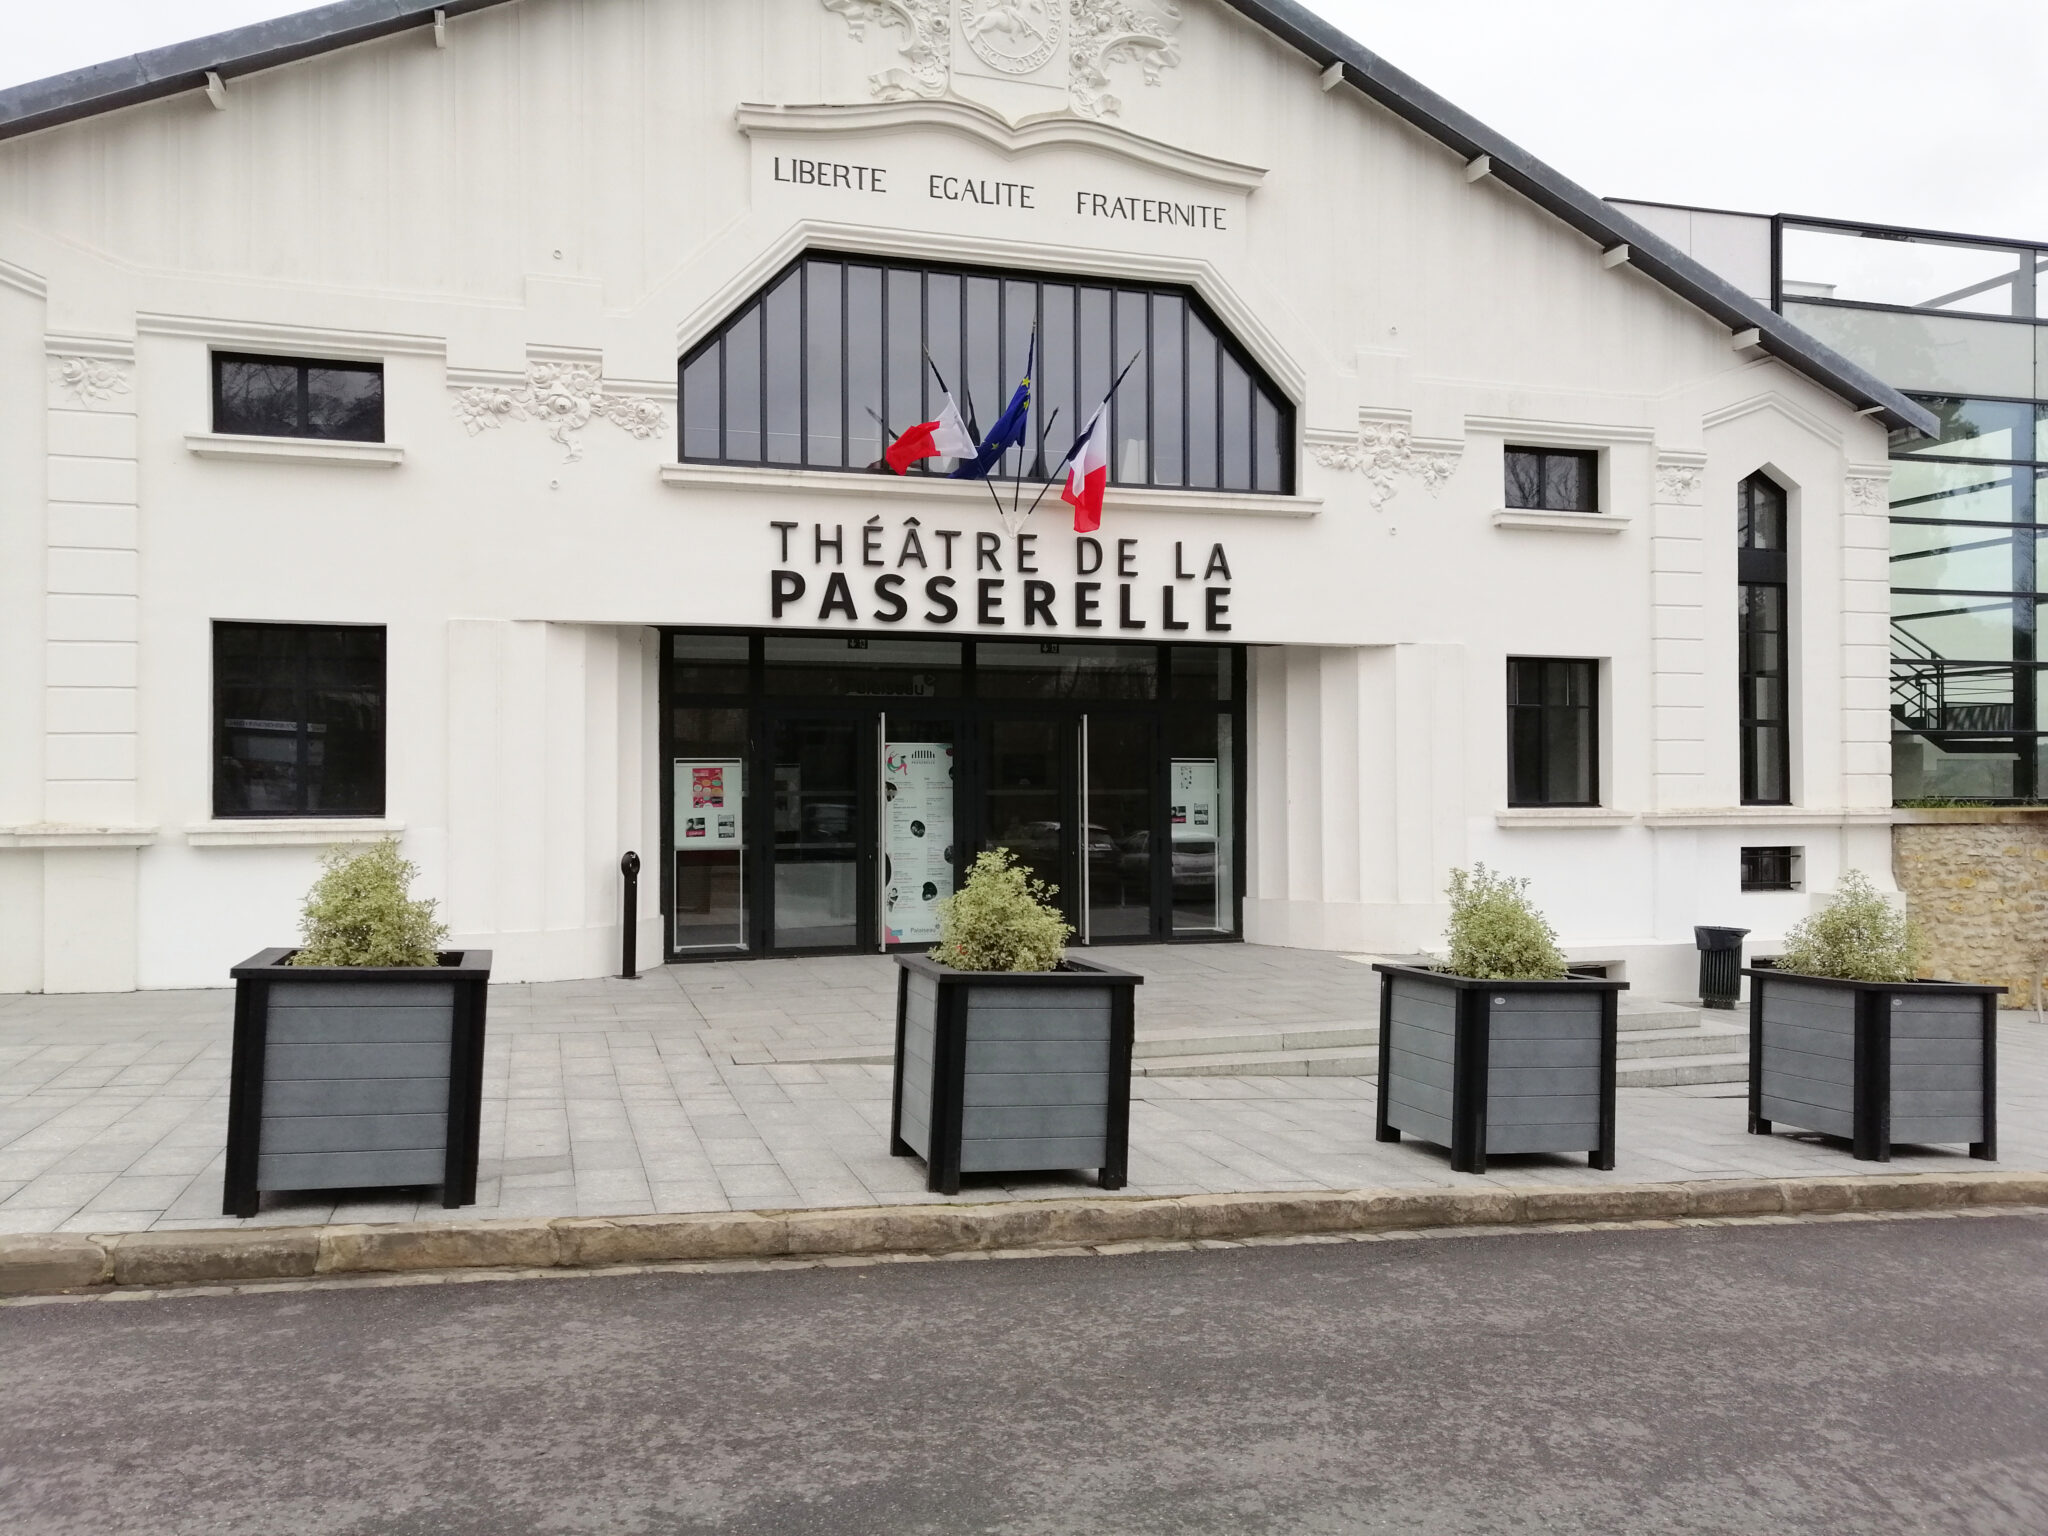 Façade du Théâtre de la Passerelle, France.